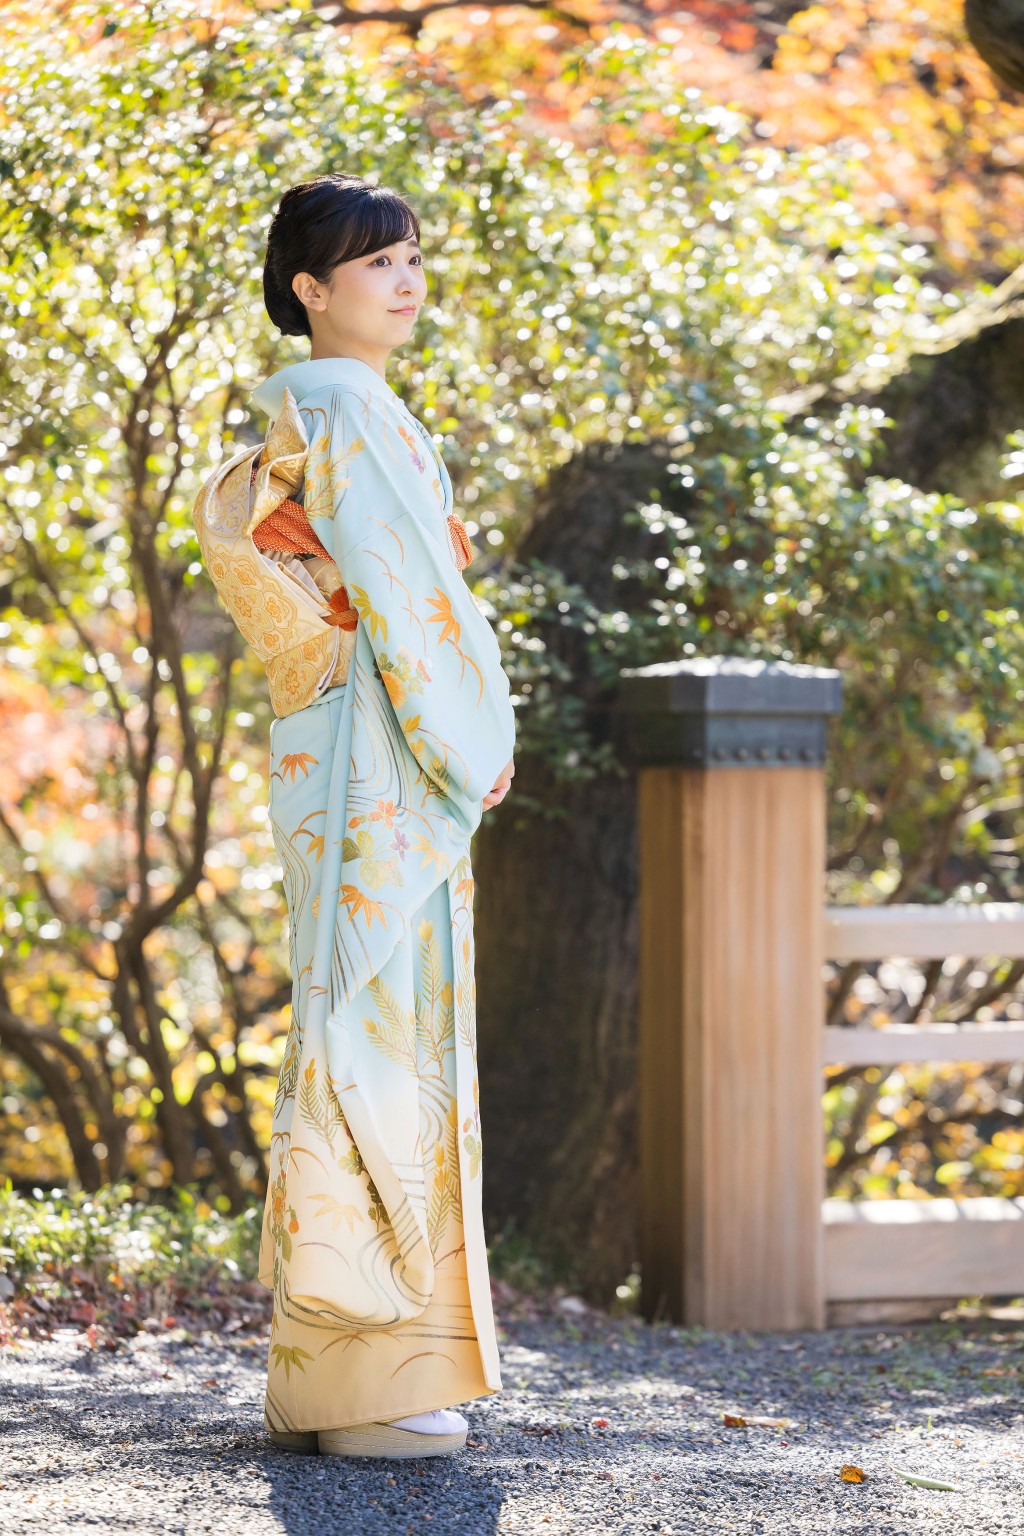 佳子公主穿和服拍摄29岁记念照片。 路透社